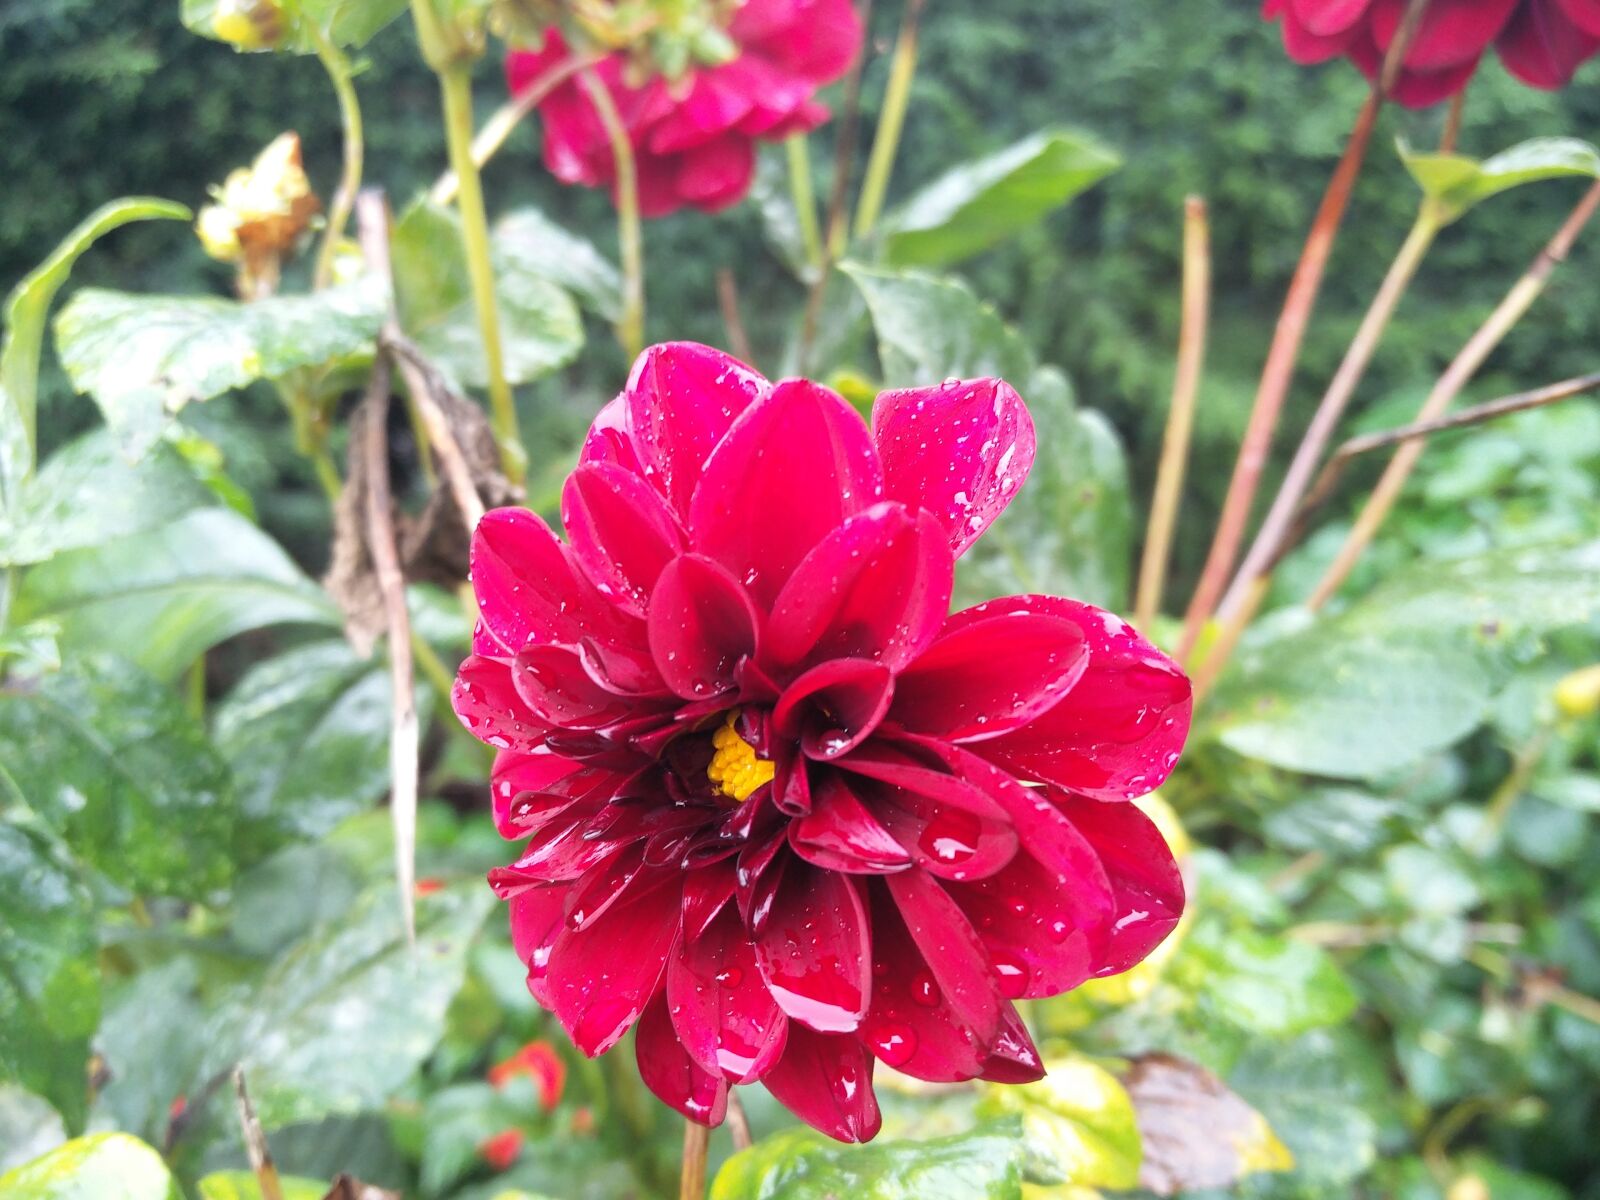 OnePlus 2 sample photo. Red velvet flower, dew photography